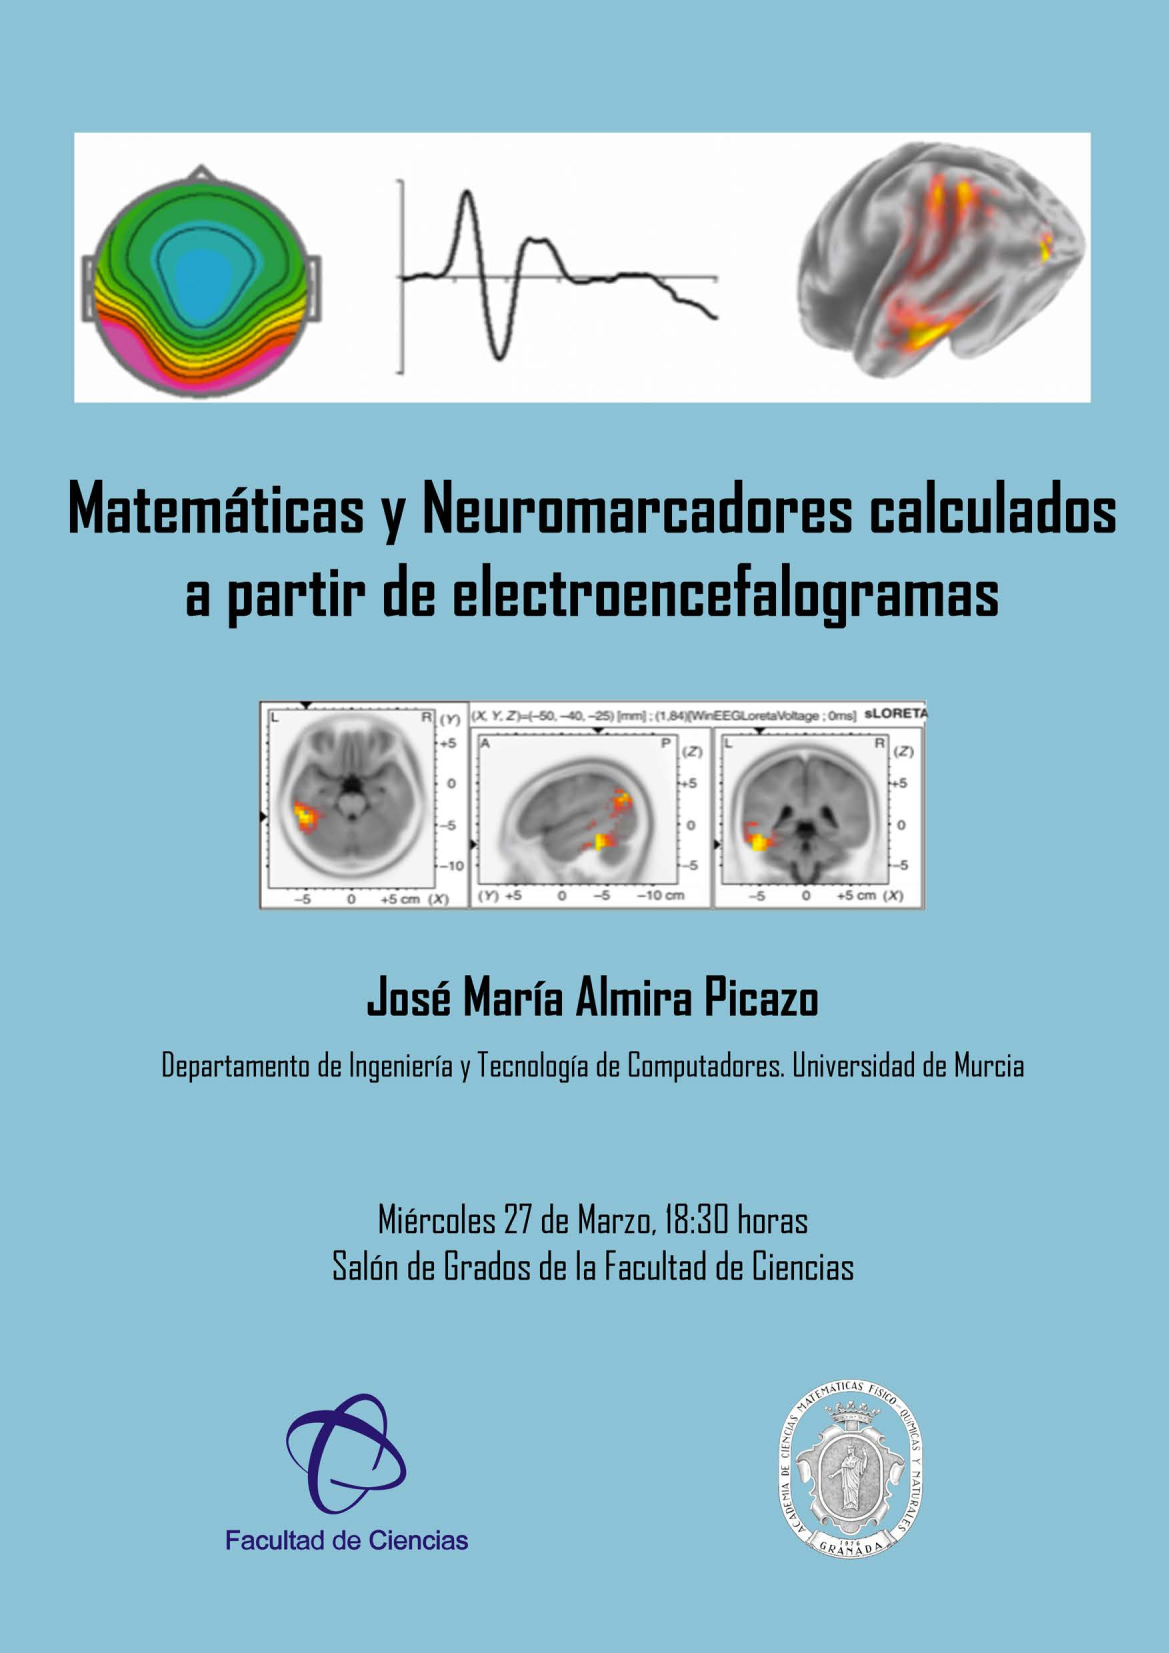 Matemáticas y Neuromarcadores calculados a partir de electroencefalogramas